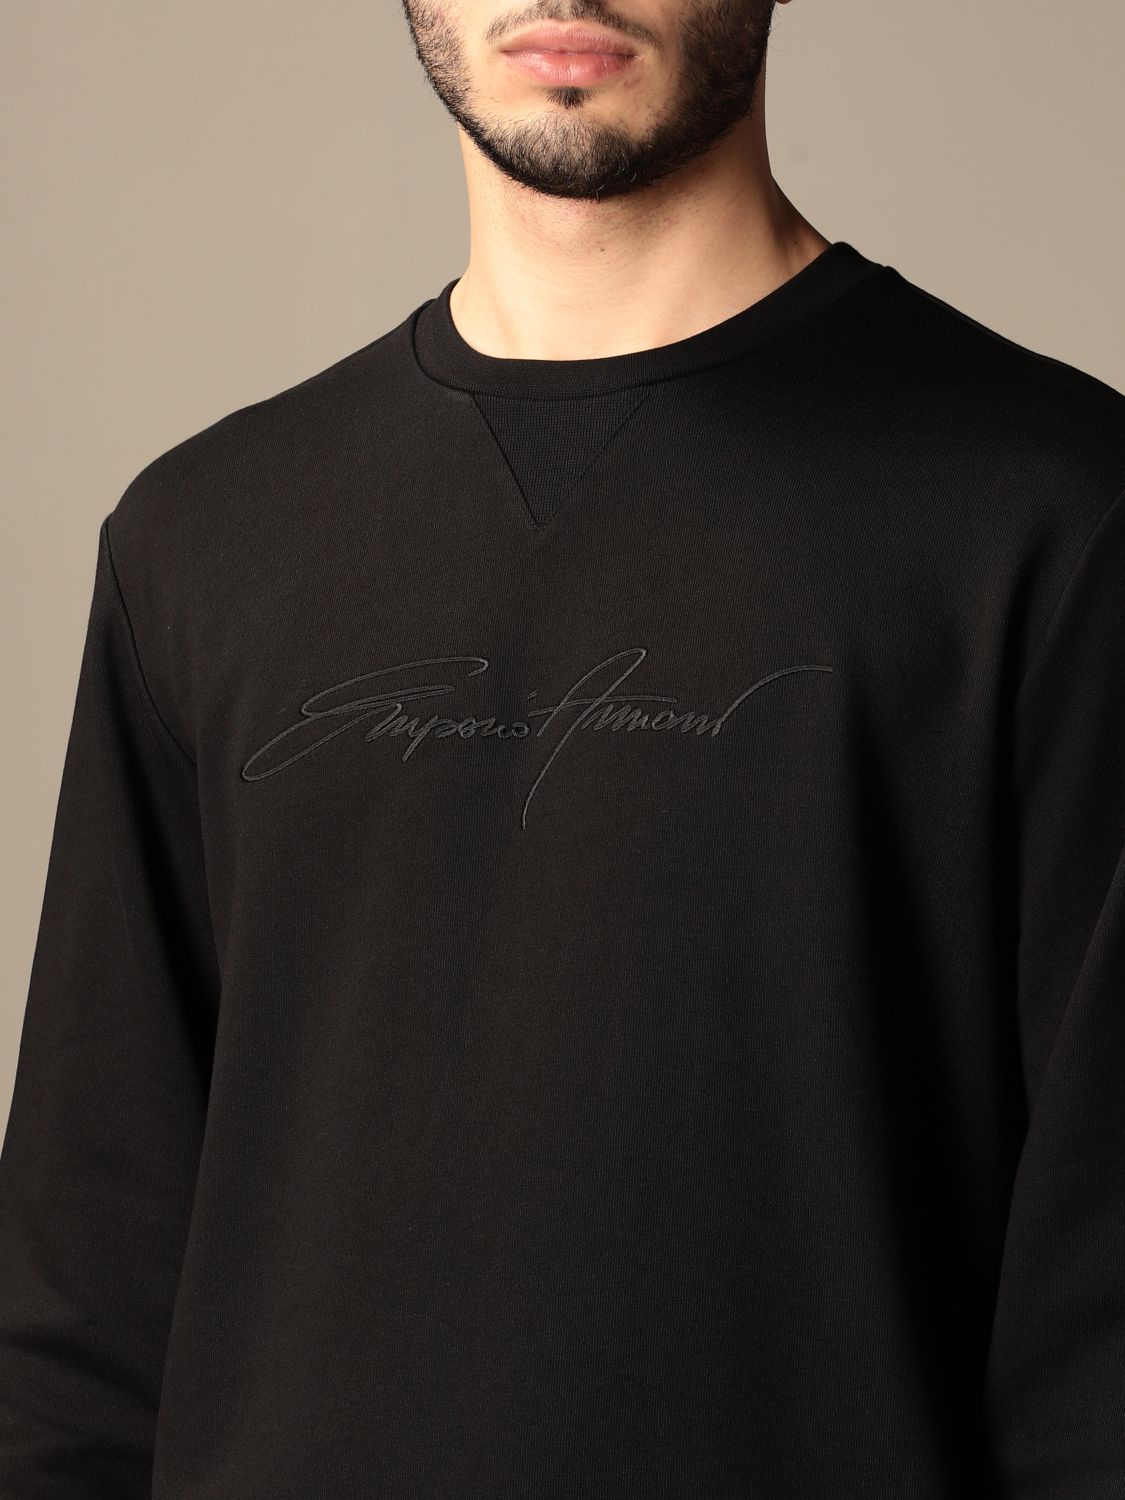 EMPORIO ARMANI: crewneck sweatshirt with signature - Black | Emporio ...